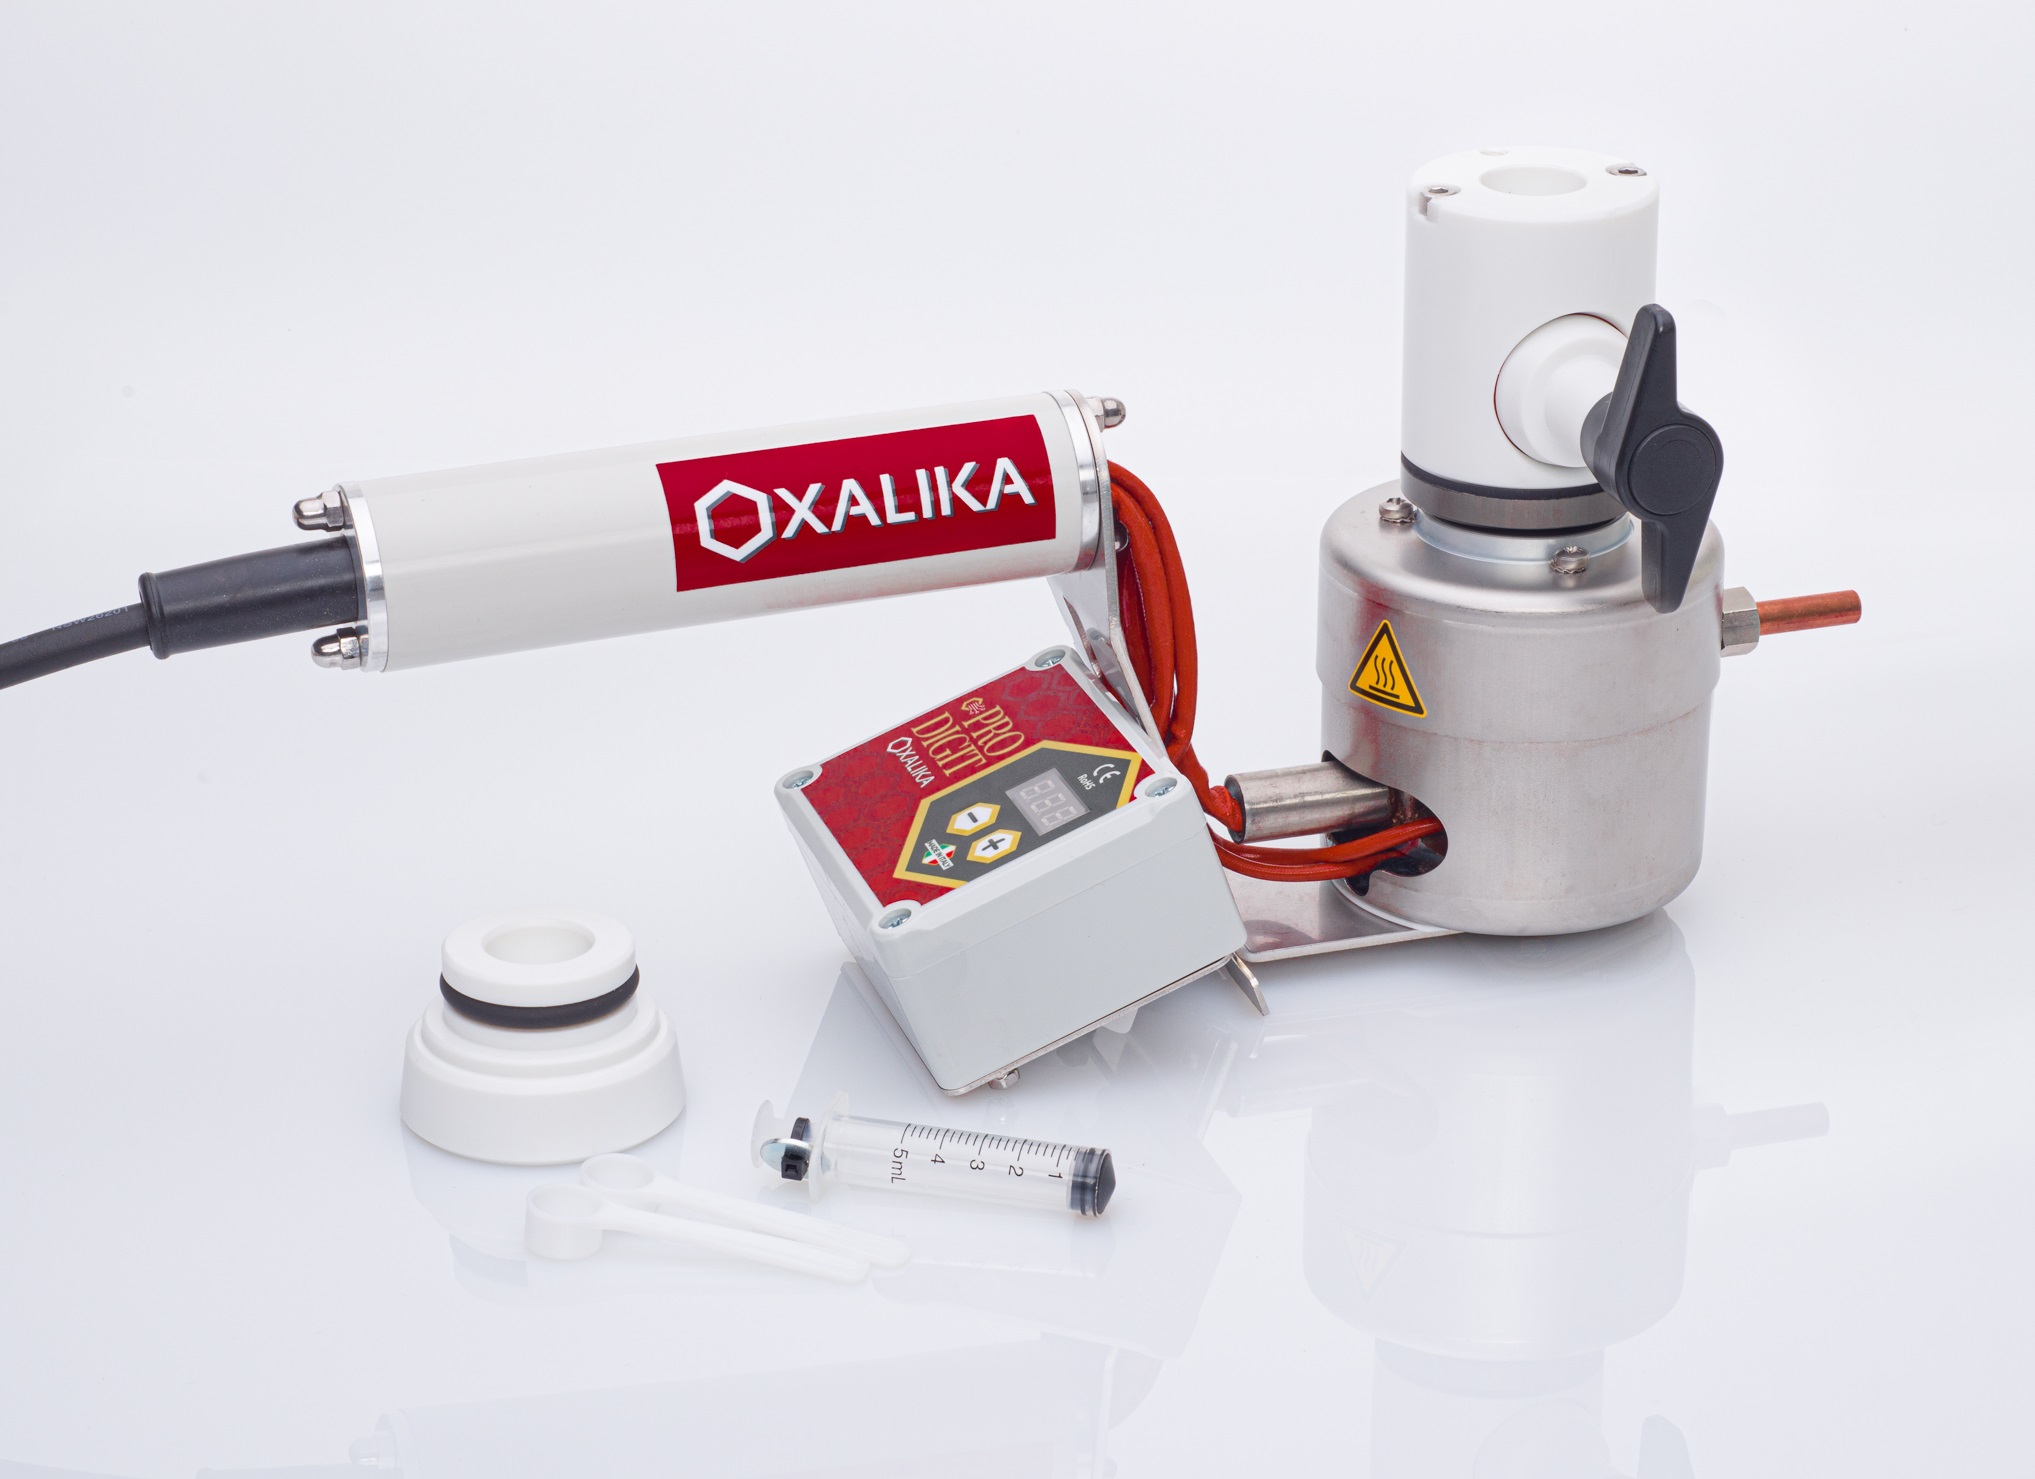 Oxalika oxálsav-szublimáló PRO SMART 12V Digitális kijelzővel